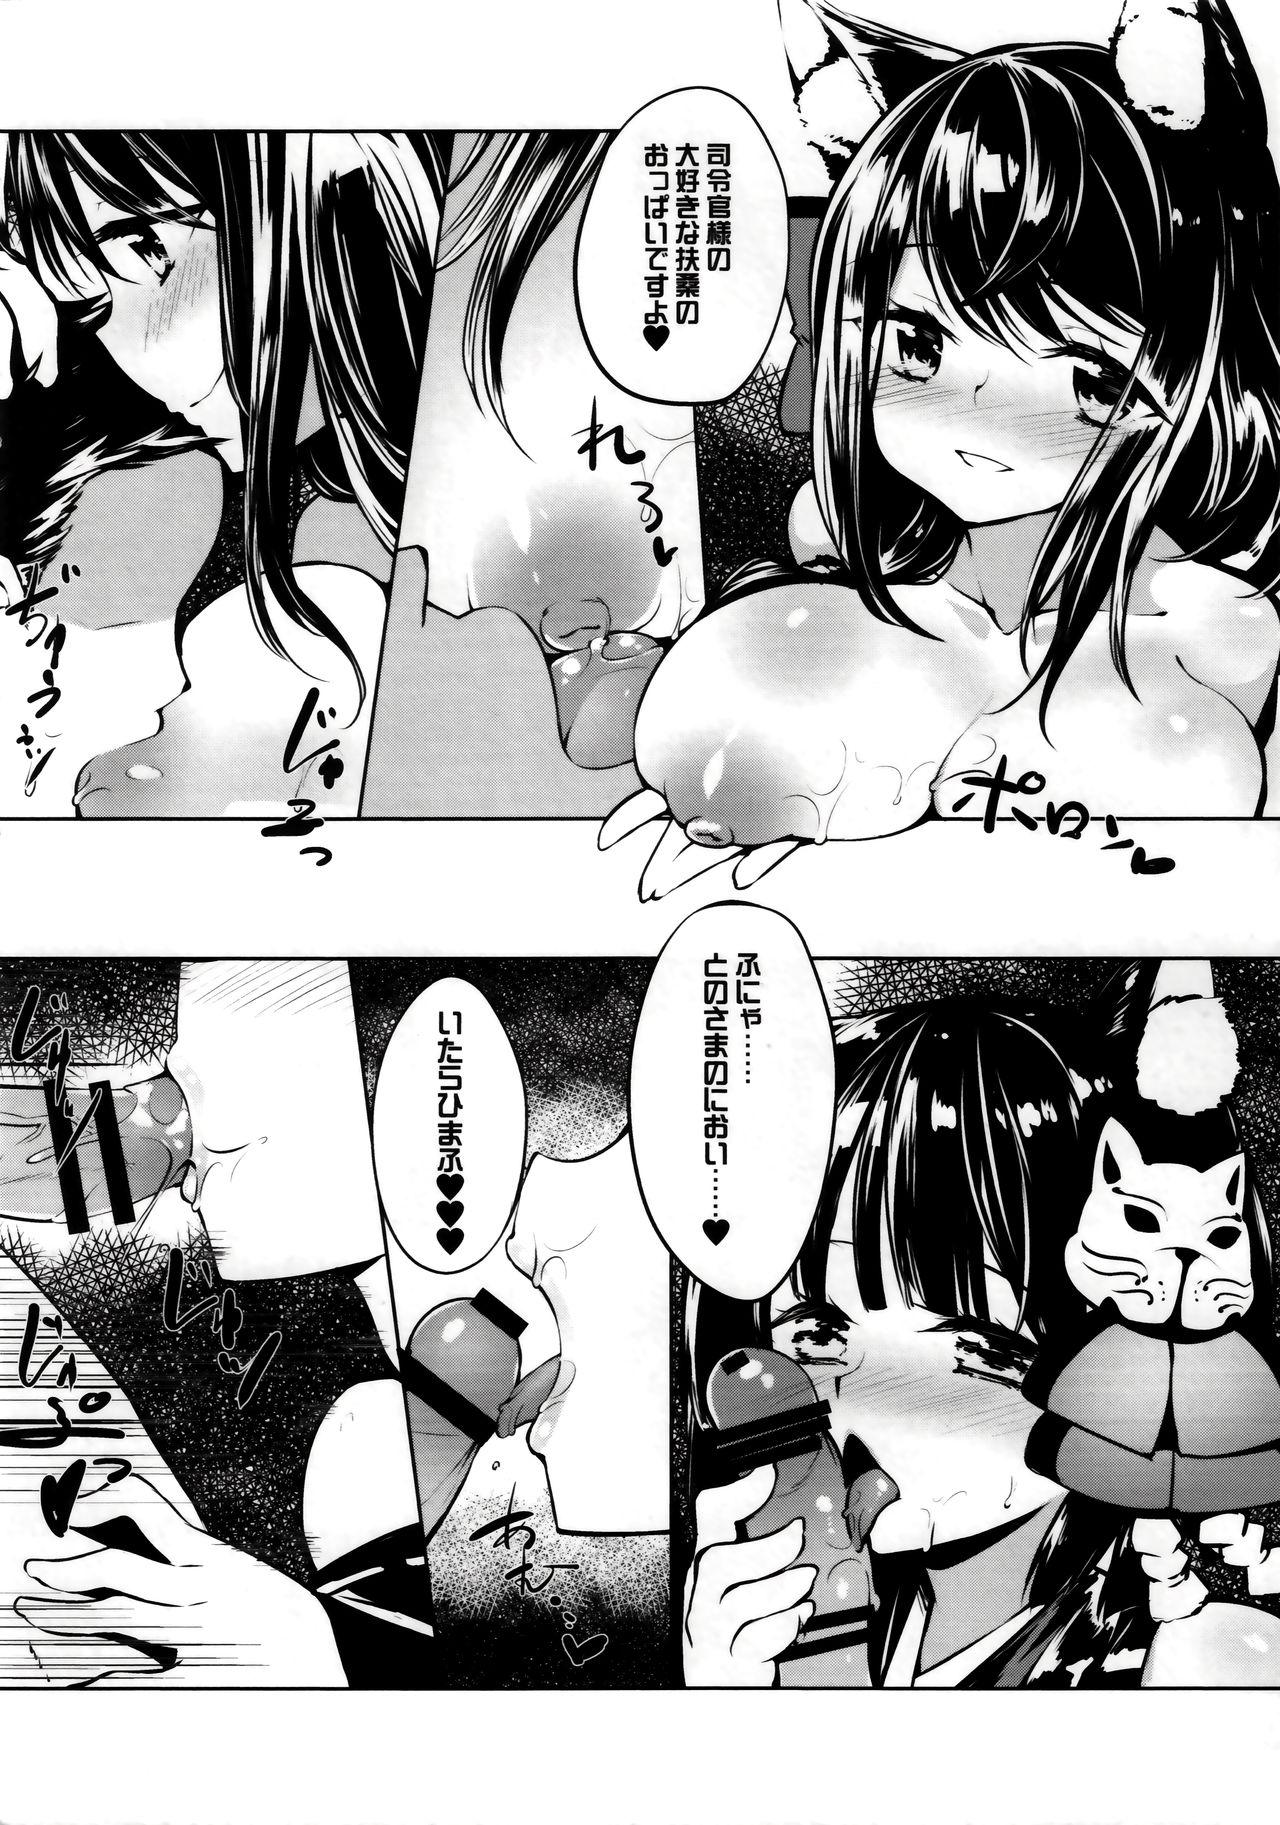 Hotfuck Azur Lovers Fusou & Yamashiro vol. 01 - Azur lane Bangla - Page 6